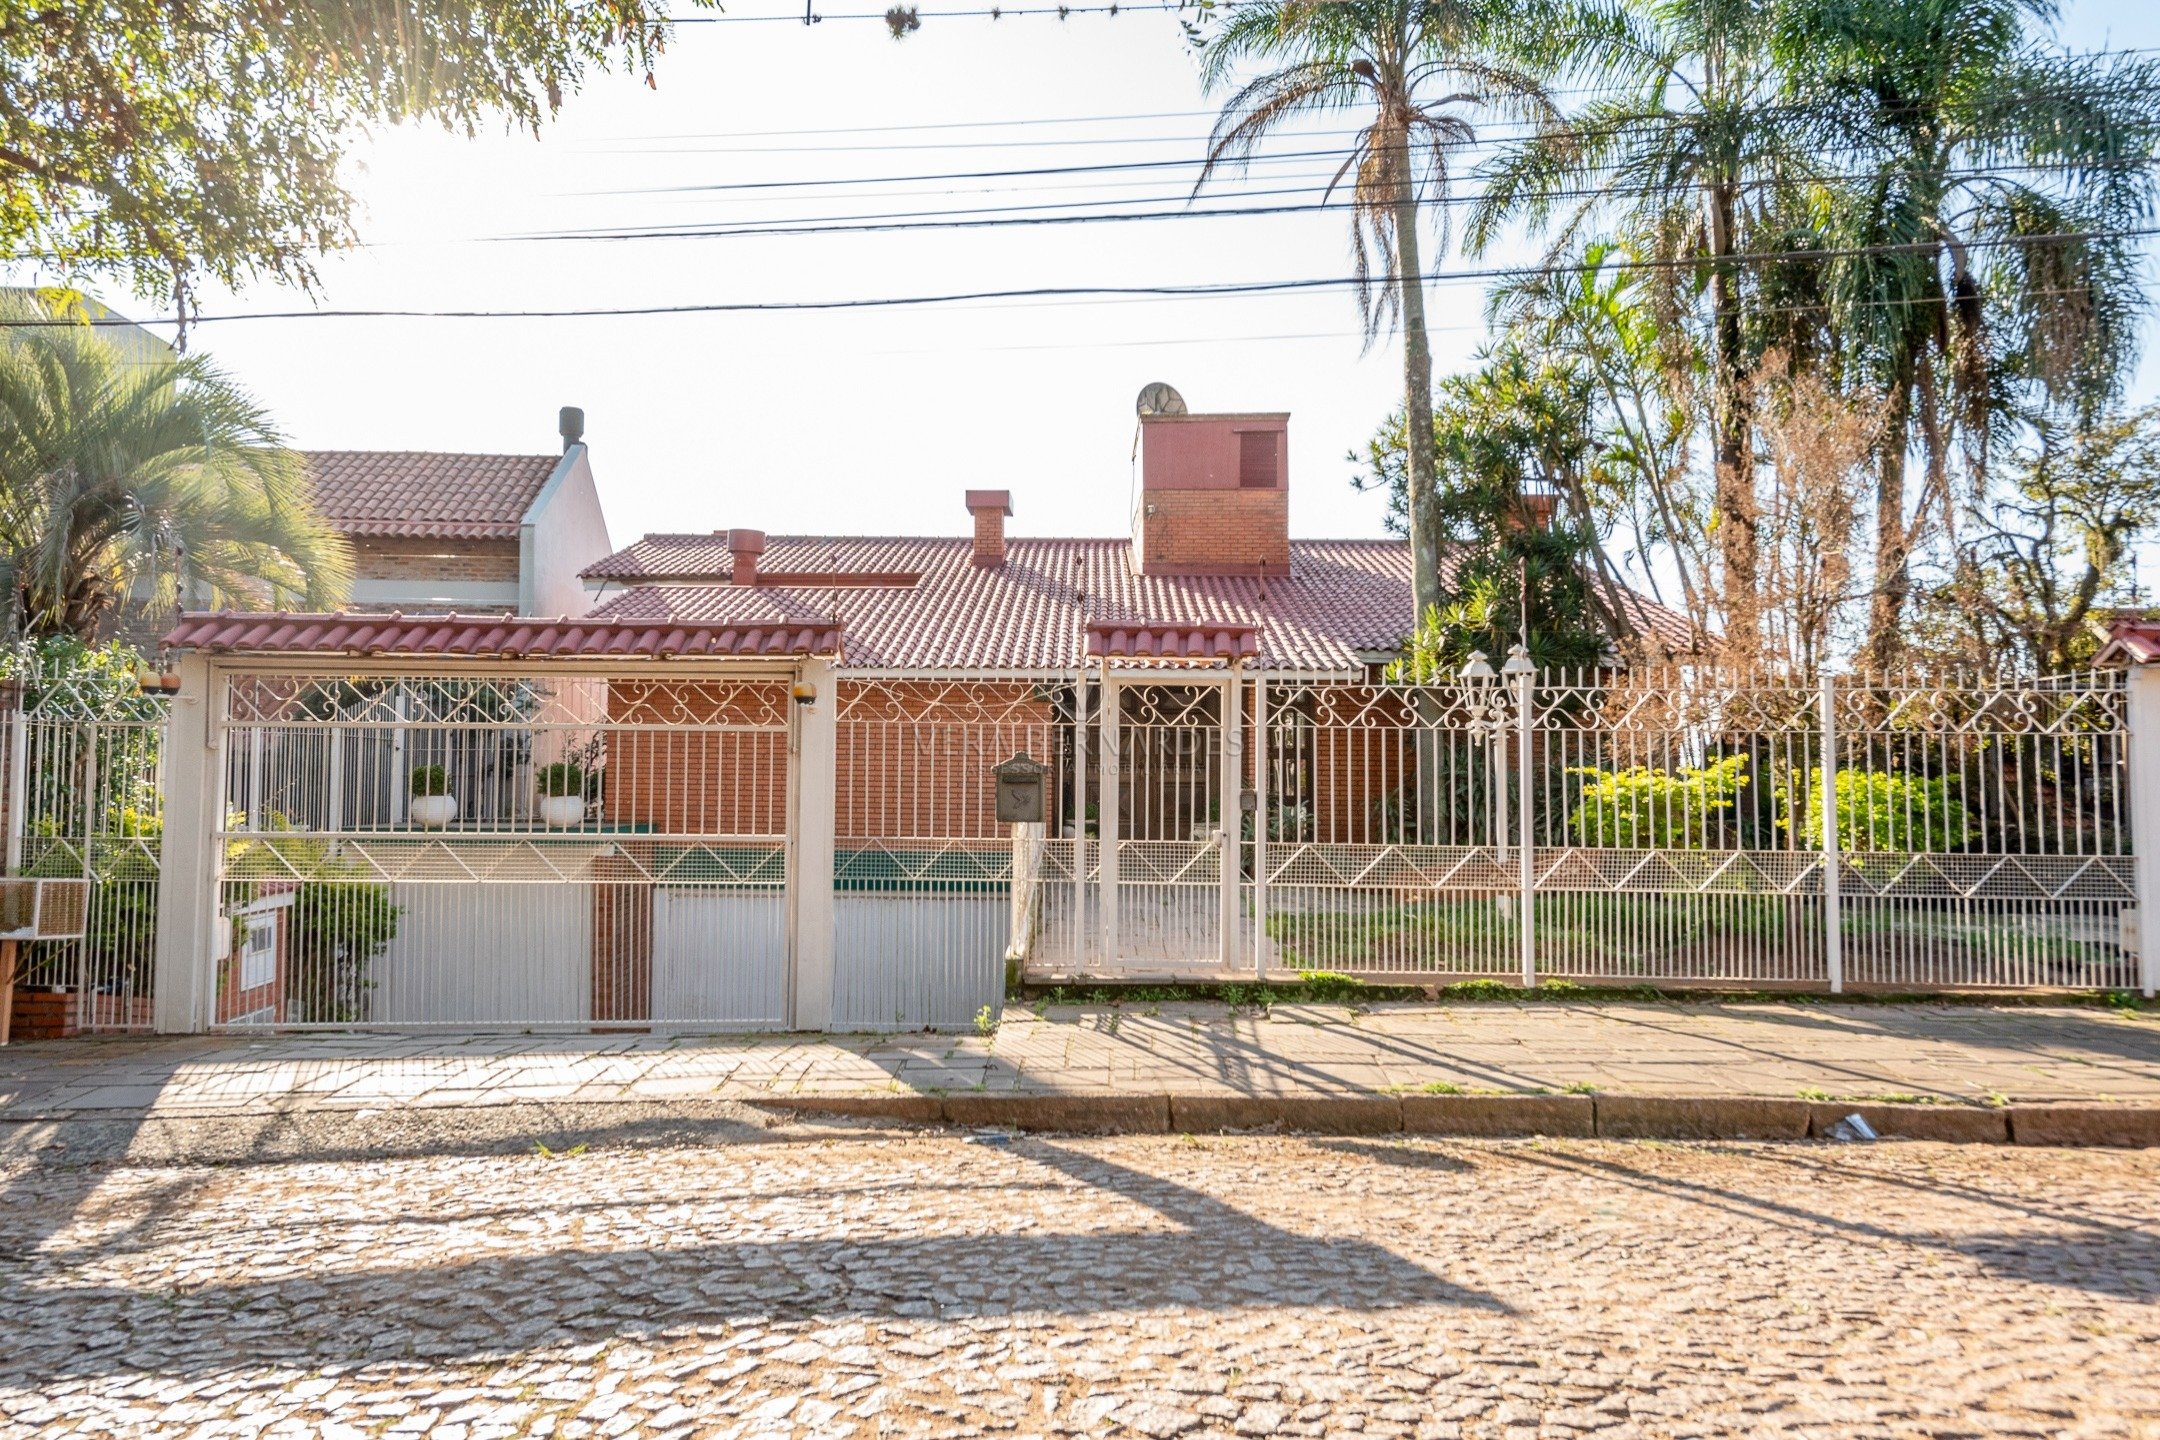 Casa à venda com 4 dormitórios, 1000m² e 4 vagas no bairro Sétimo Céu, Zona Sul de Porto Alegre